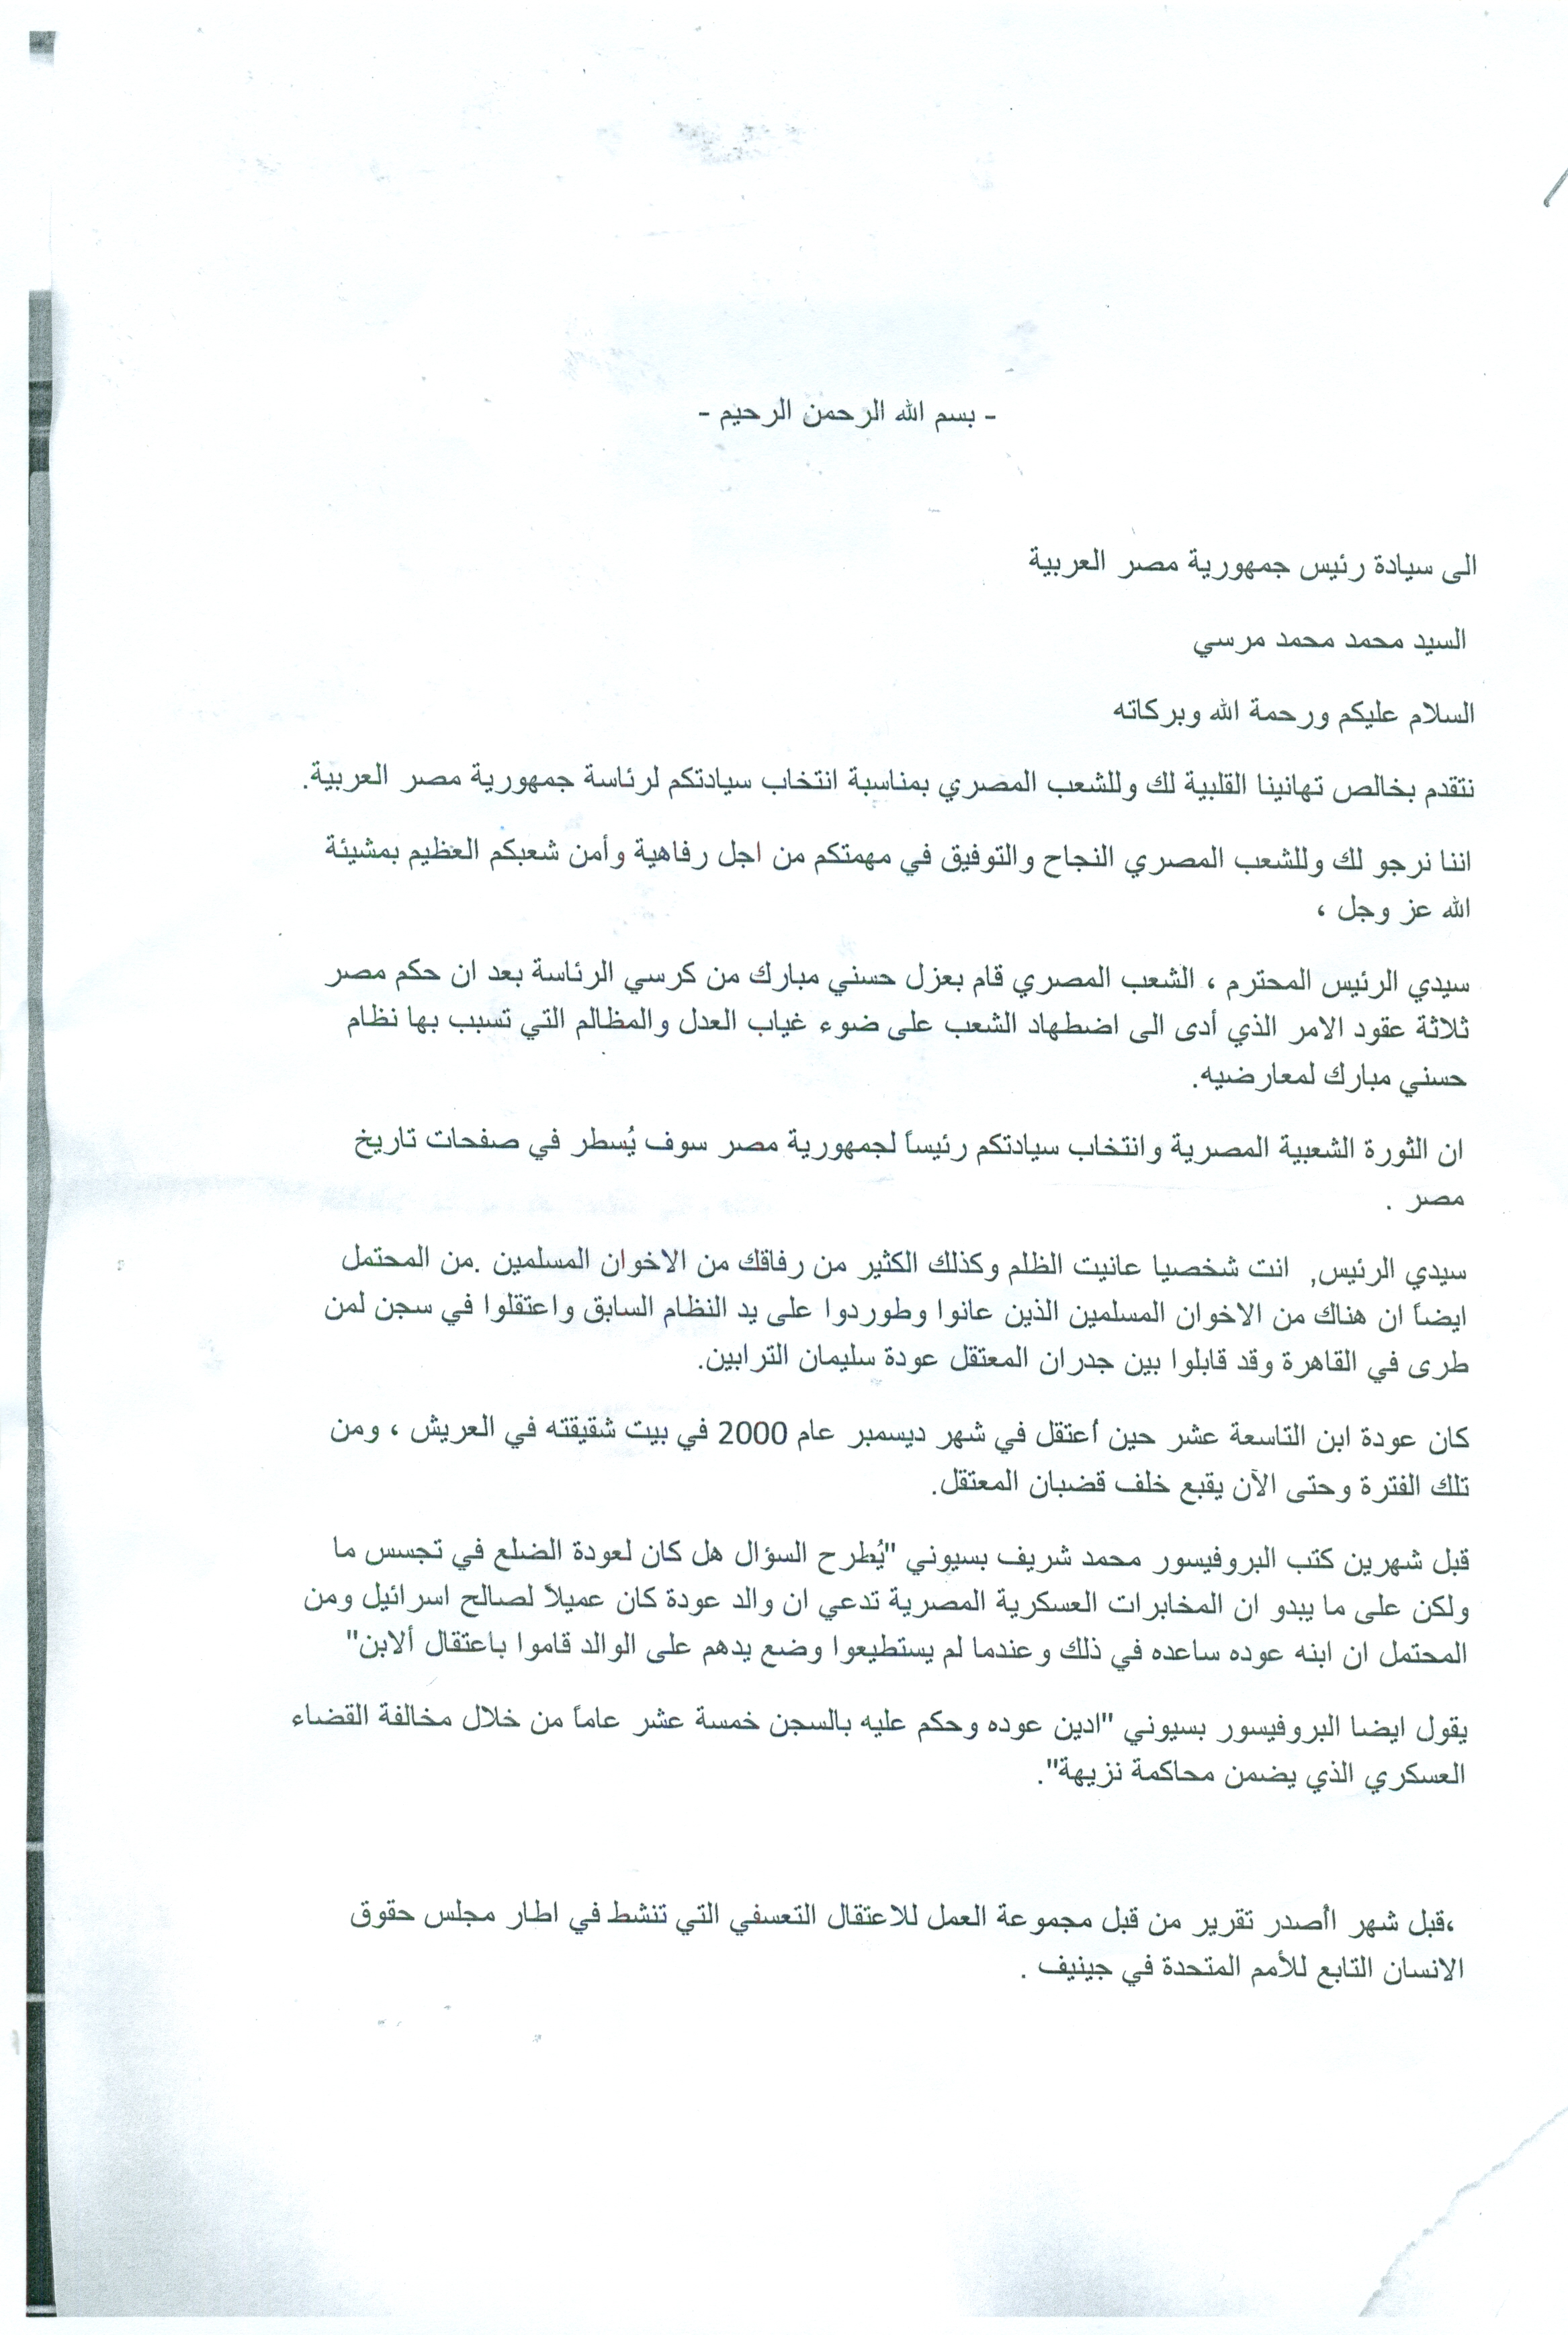 מכתבו של טראבין לנשיא מצרים